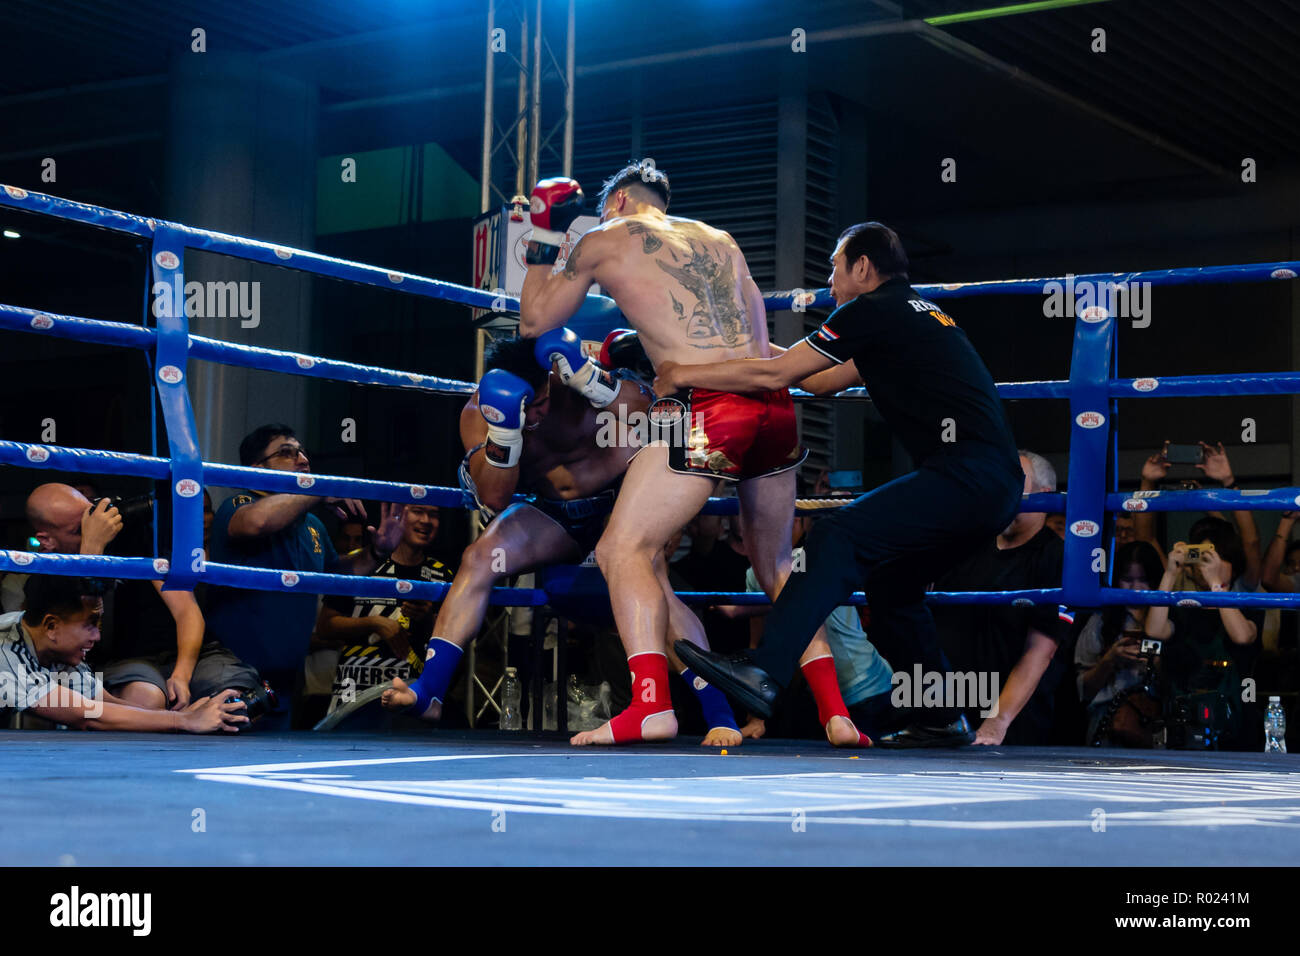 Bangkok, Thailand - October 31, 2018: Bangkok Muay Thai Fights at MBK Center. Stock Photo